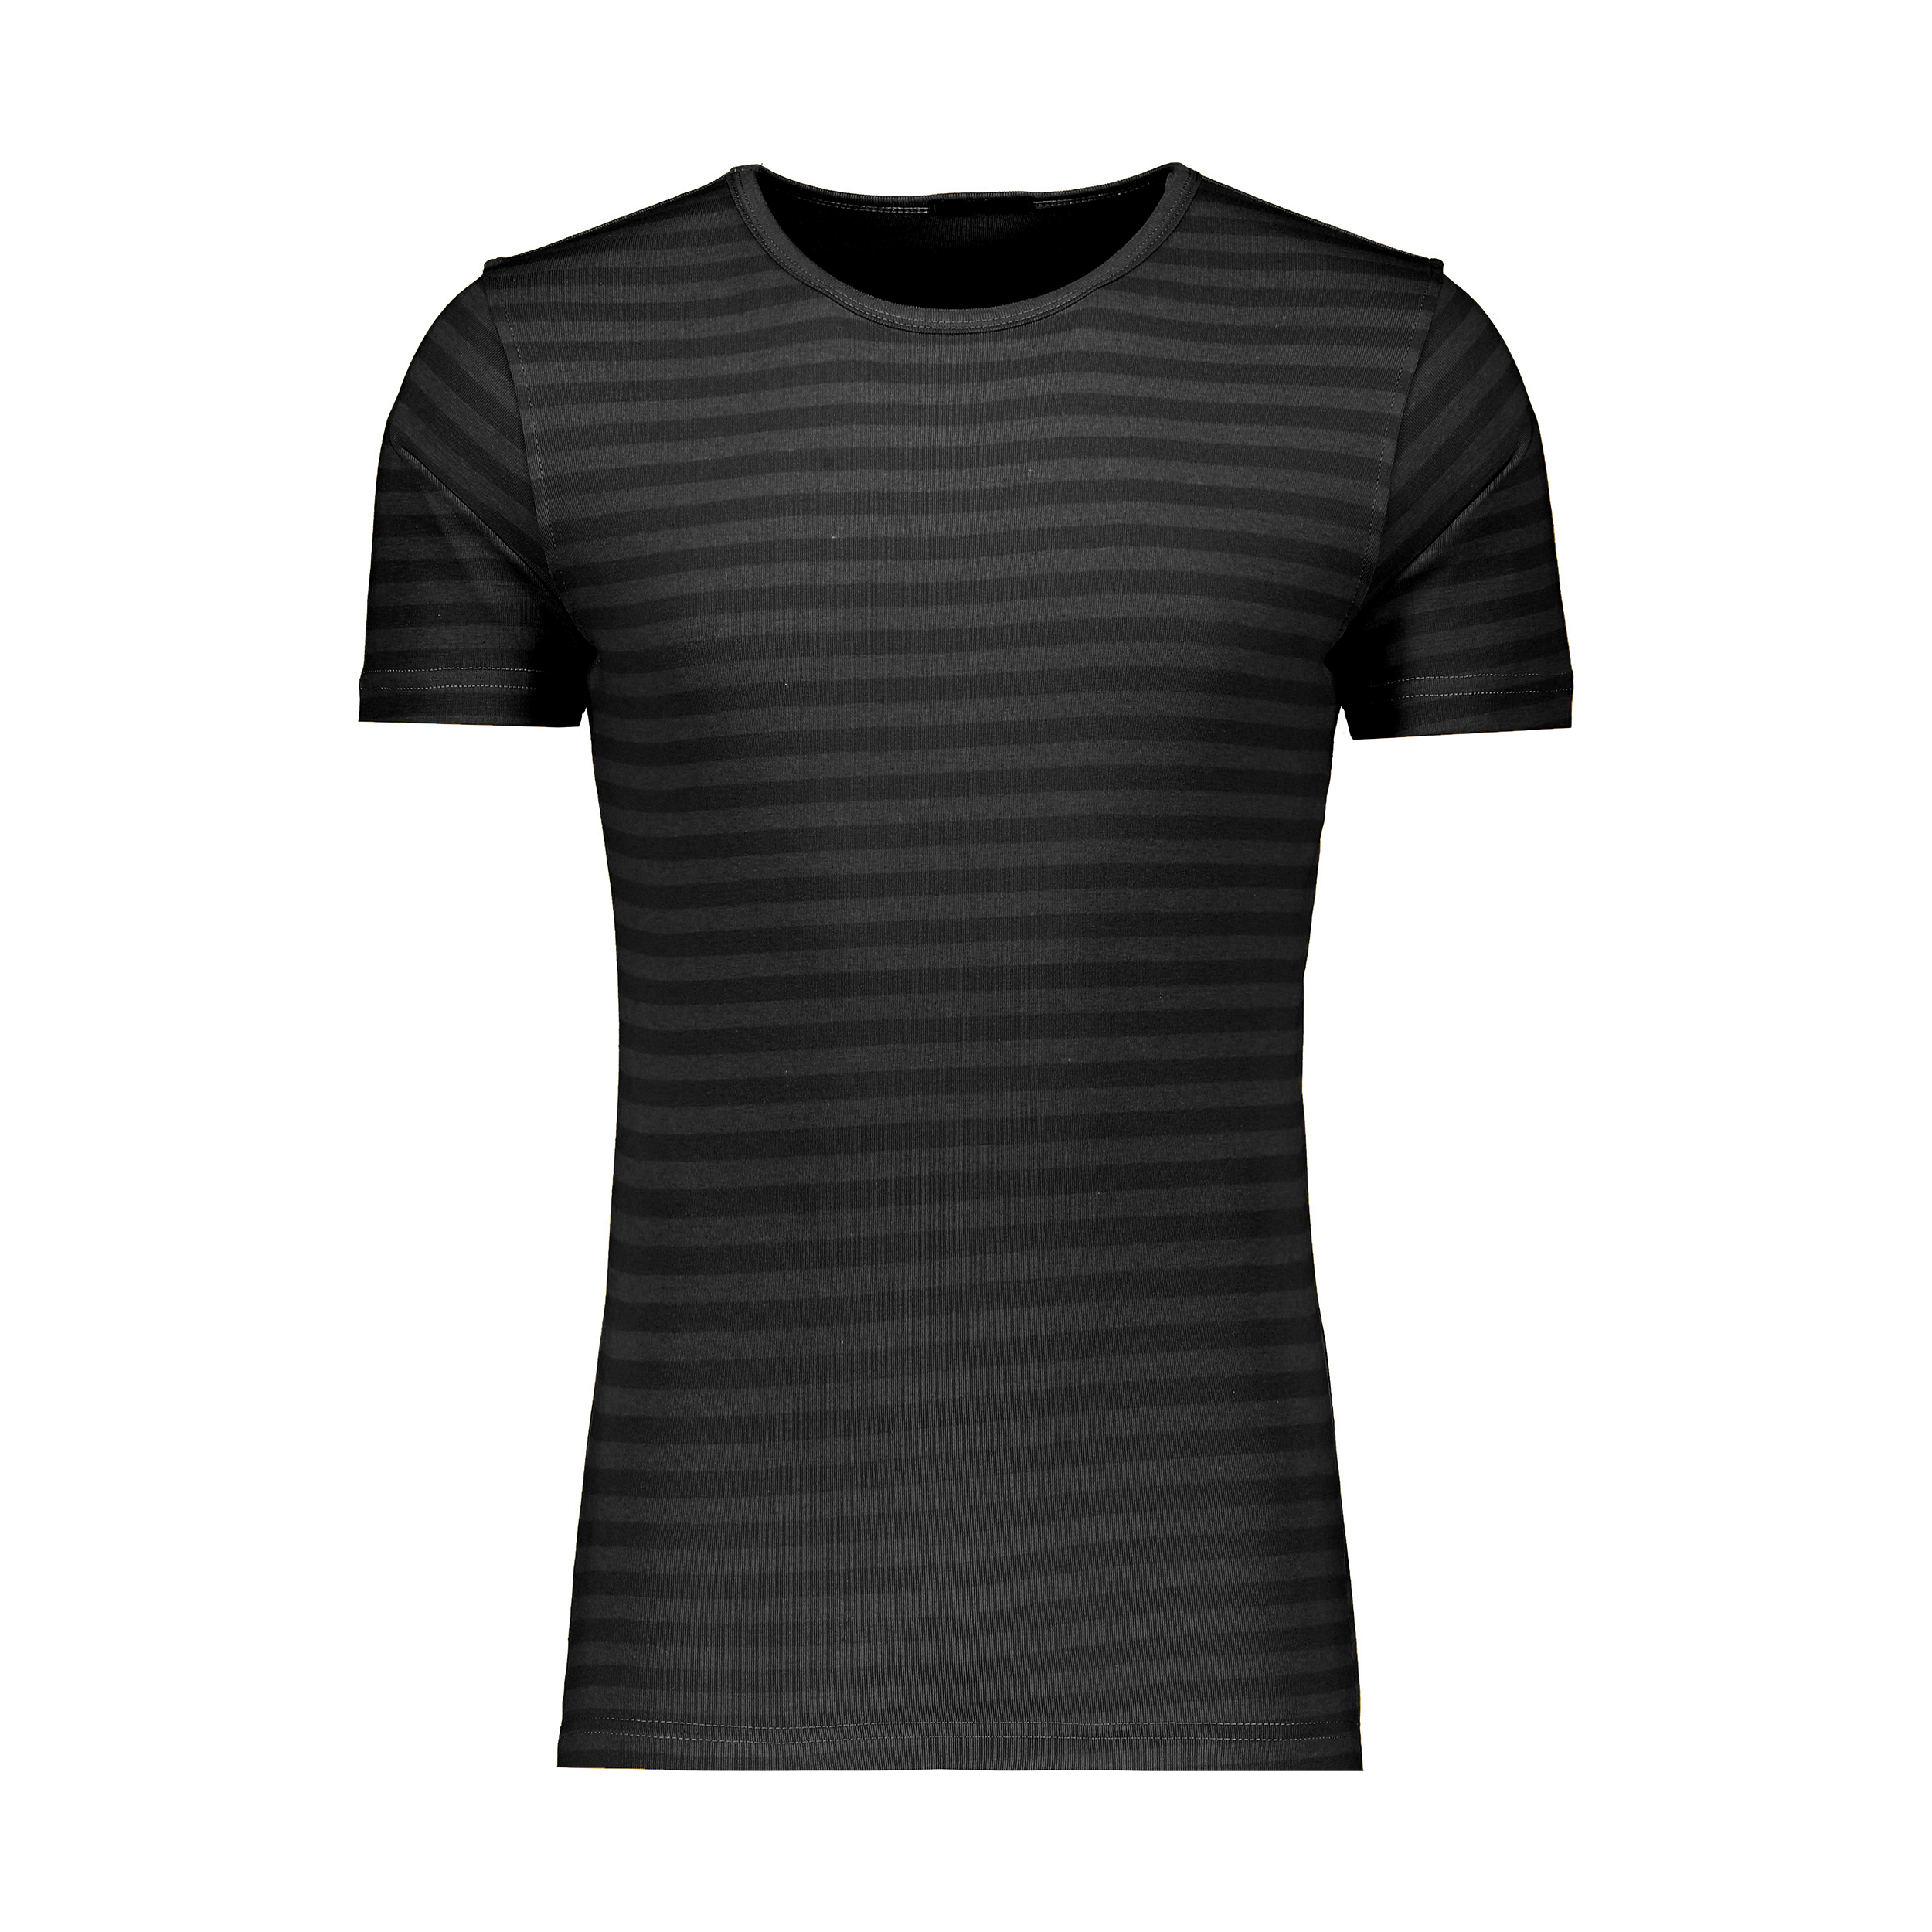 تی شرت ورزشی مردانه آر اِن اِس مدل 12021263-94